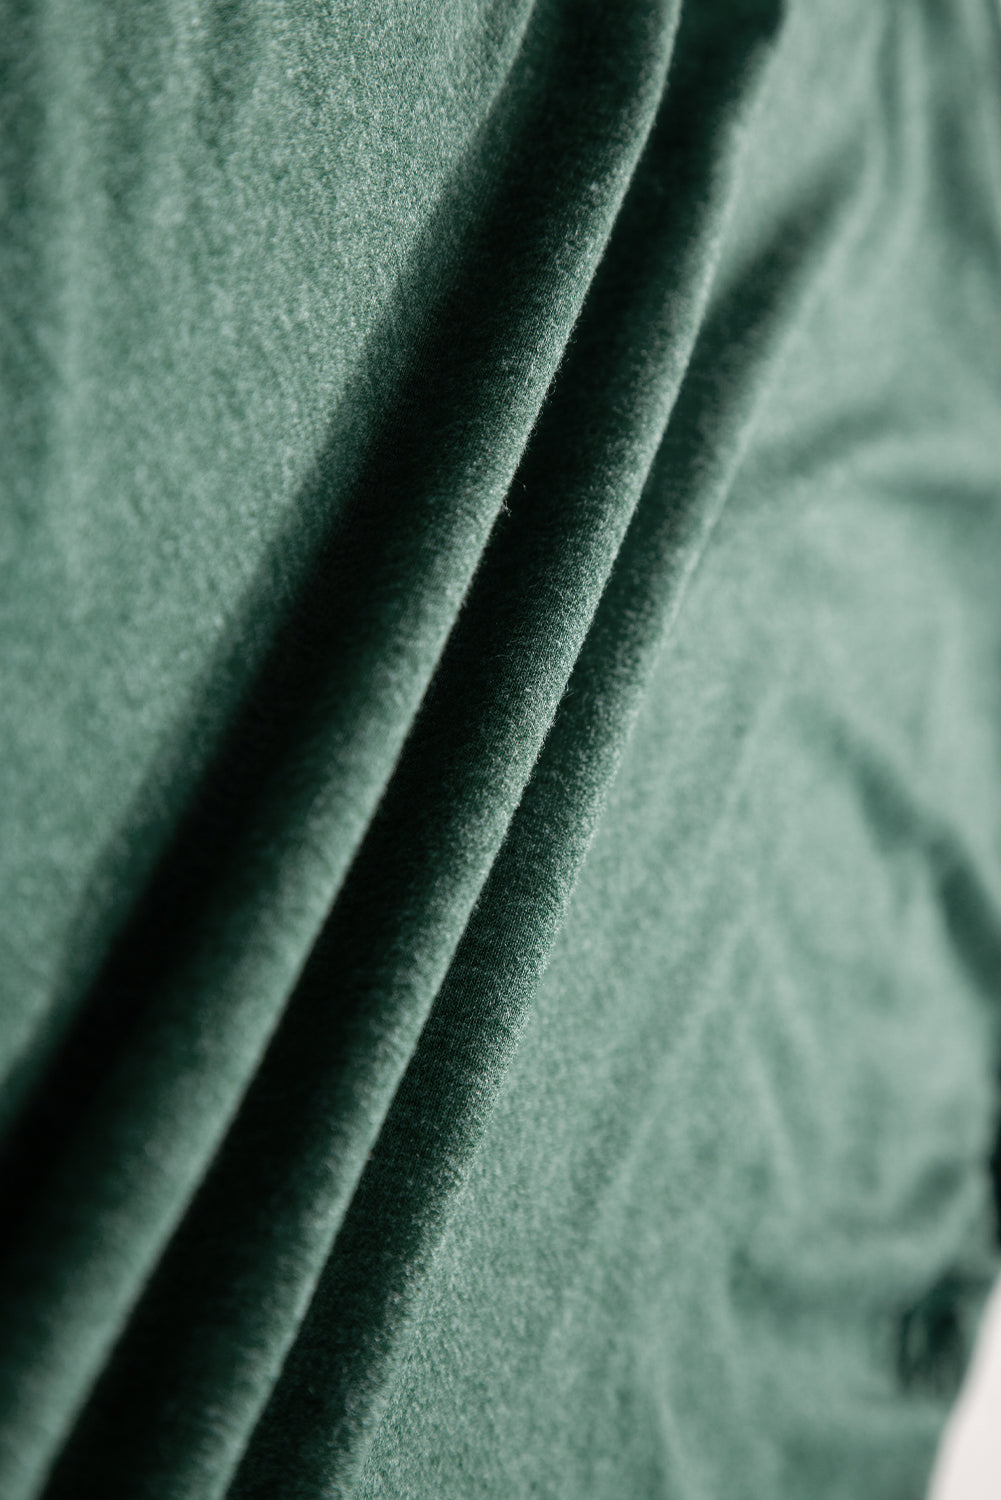 T-shirt oversize con dettagli in pizzo all'uncinetto verde nerastro